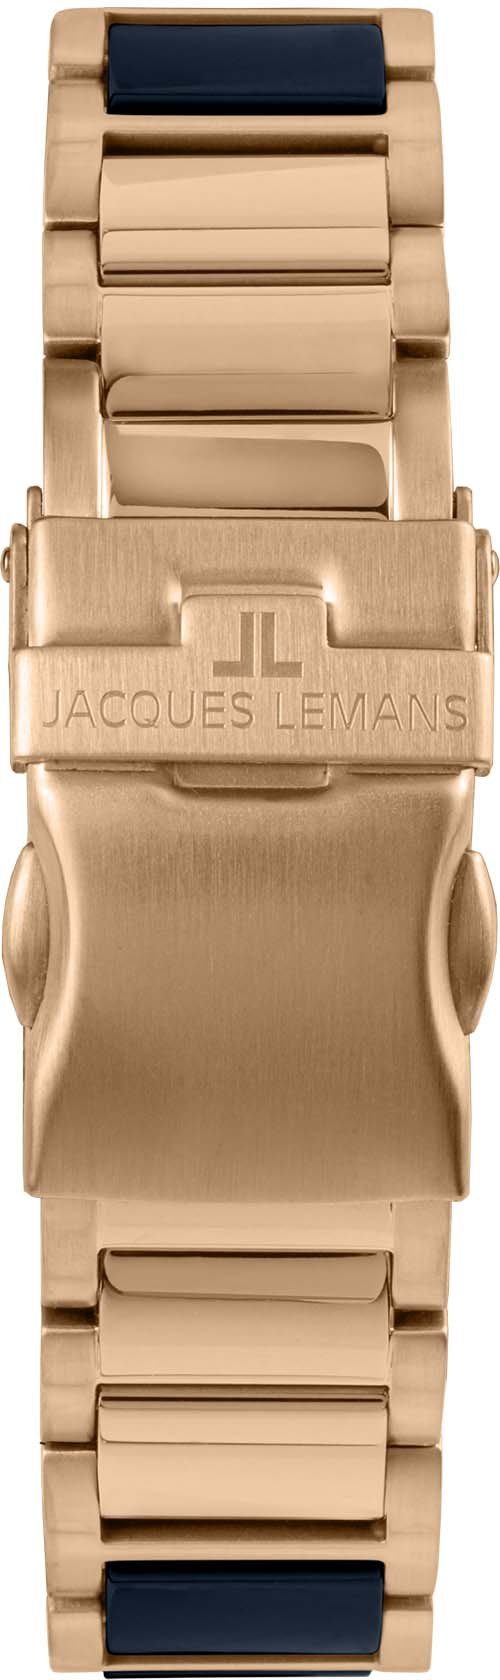 Keramikuhr Liverpool, Jacques Lemans 42-12H